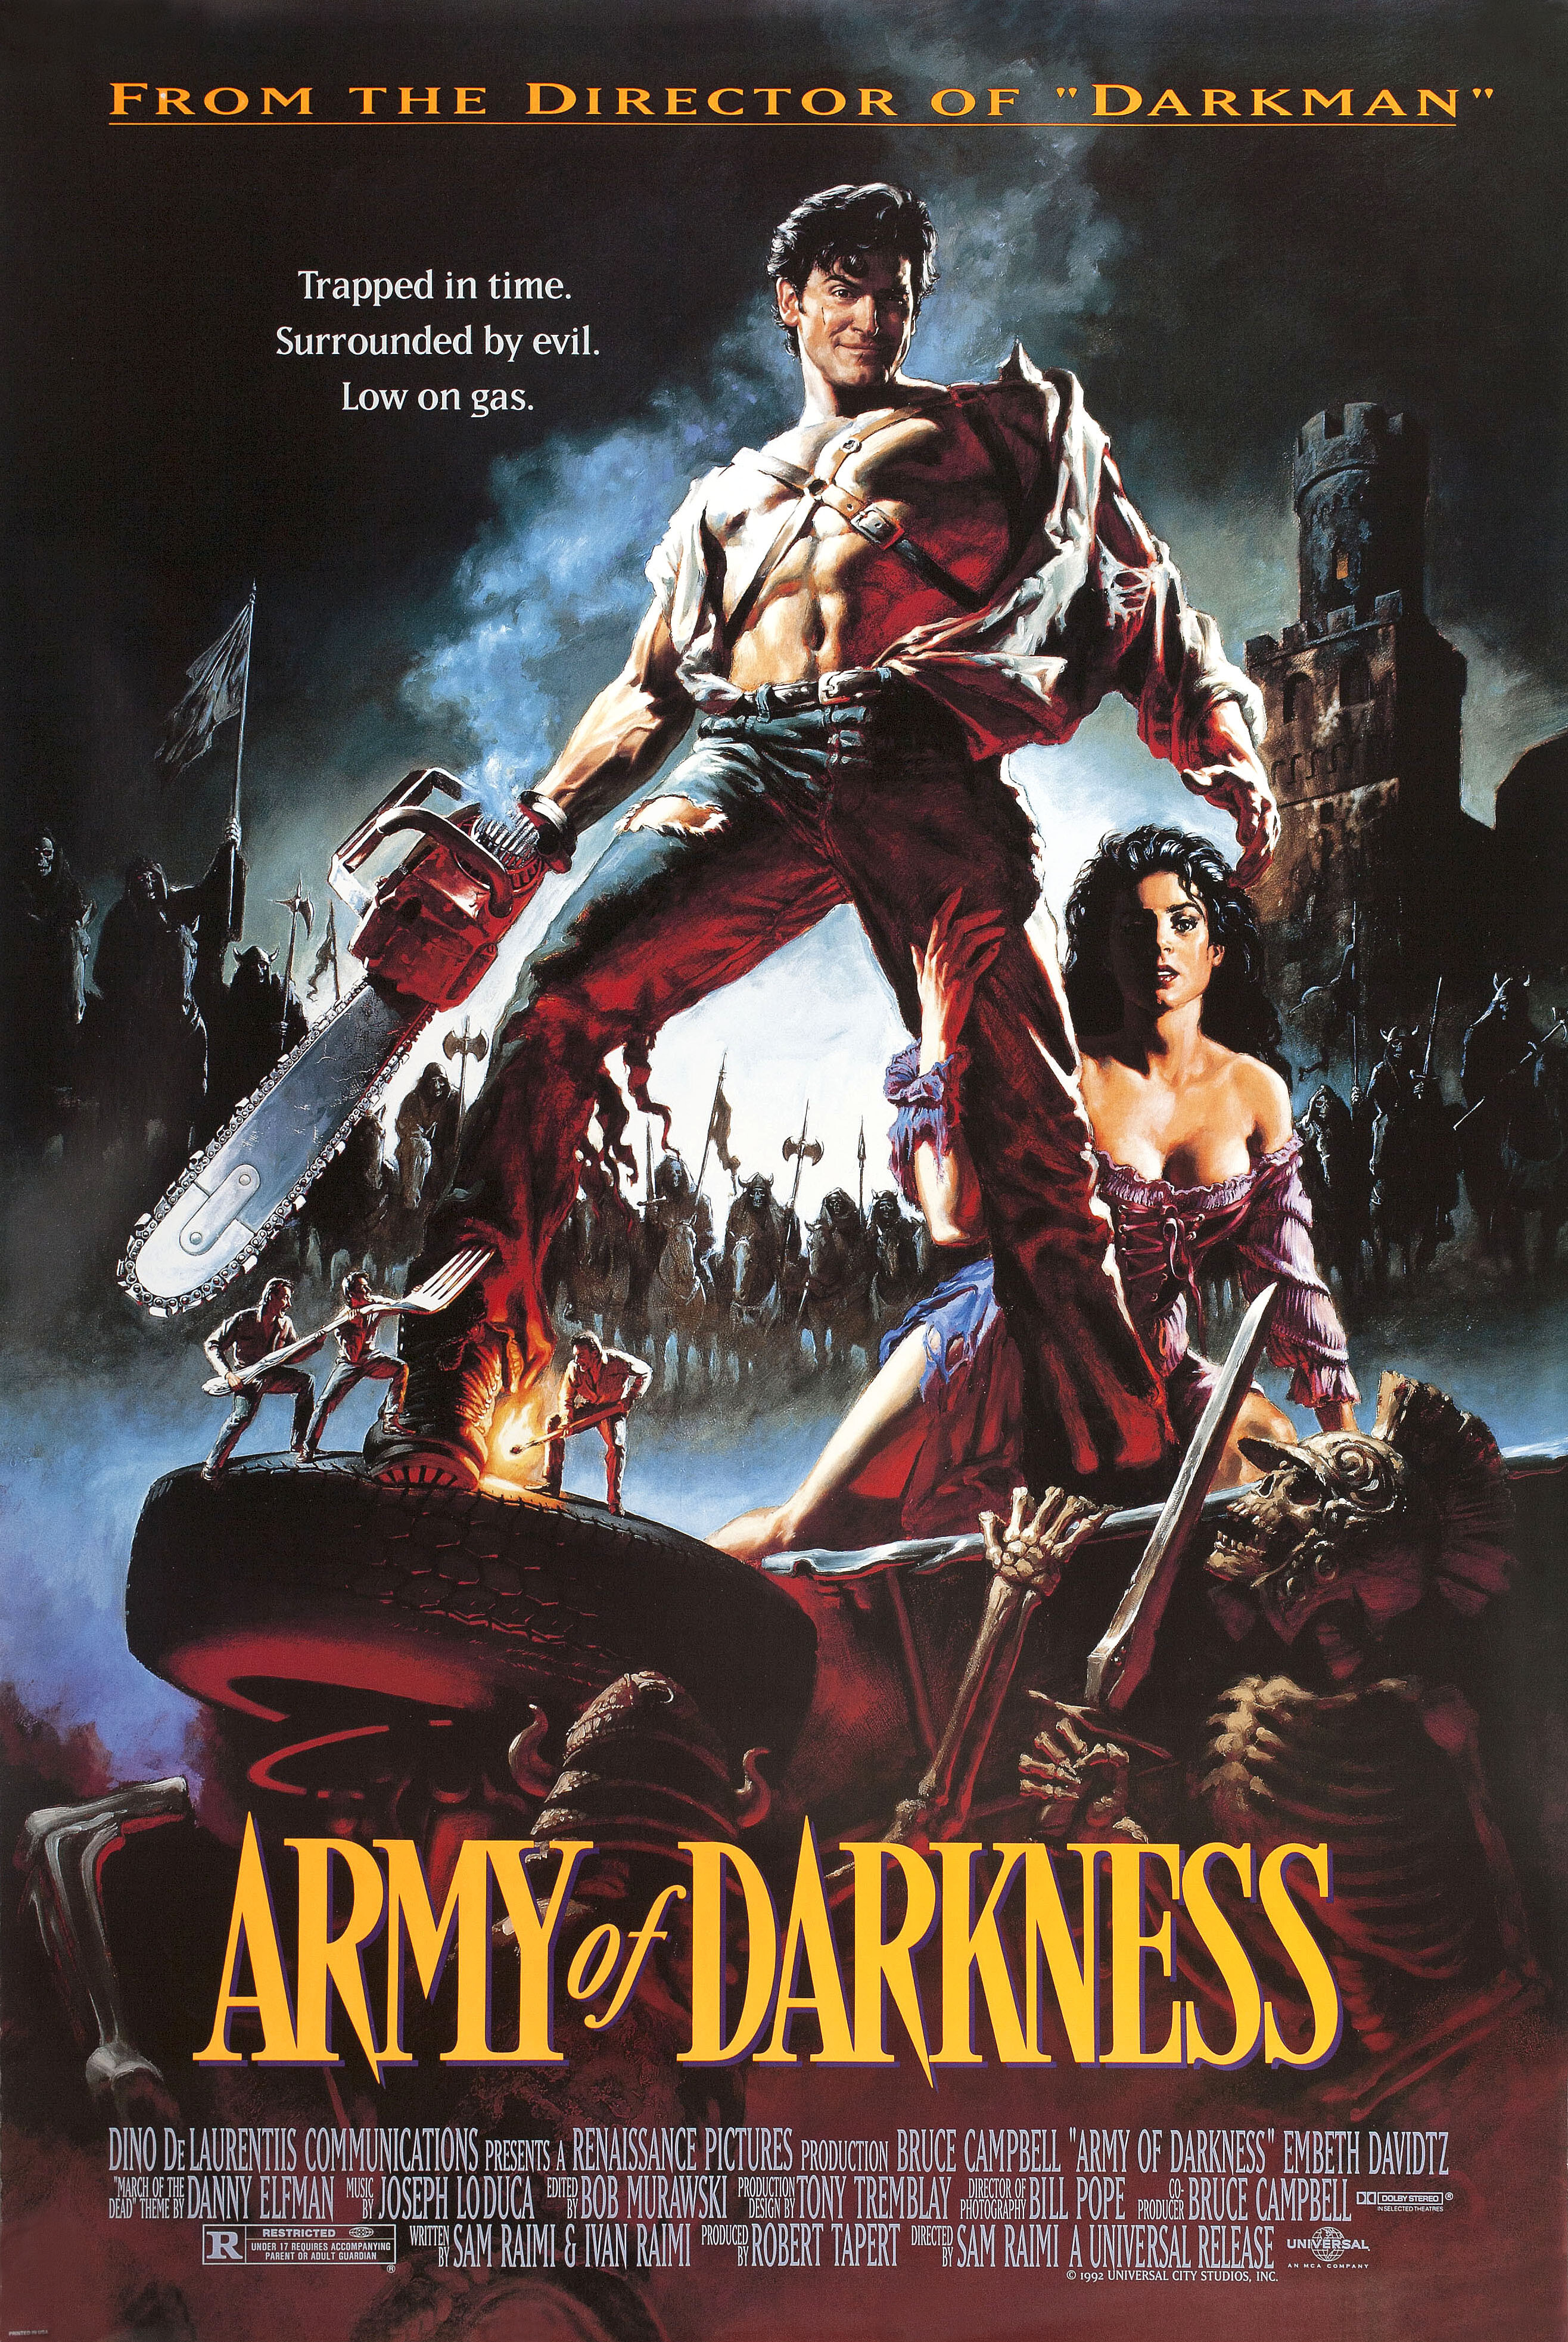 Зловещие мертвецы 3: Армия тьмы (Army of Darkness, 1992), режиссёр Сэм Рэйми, американский постер к фильму, автор Джон Болтон (ужасы, 1992 год)